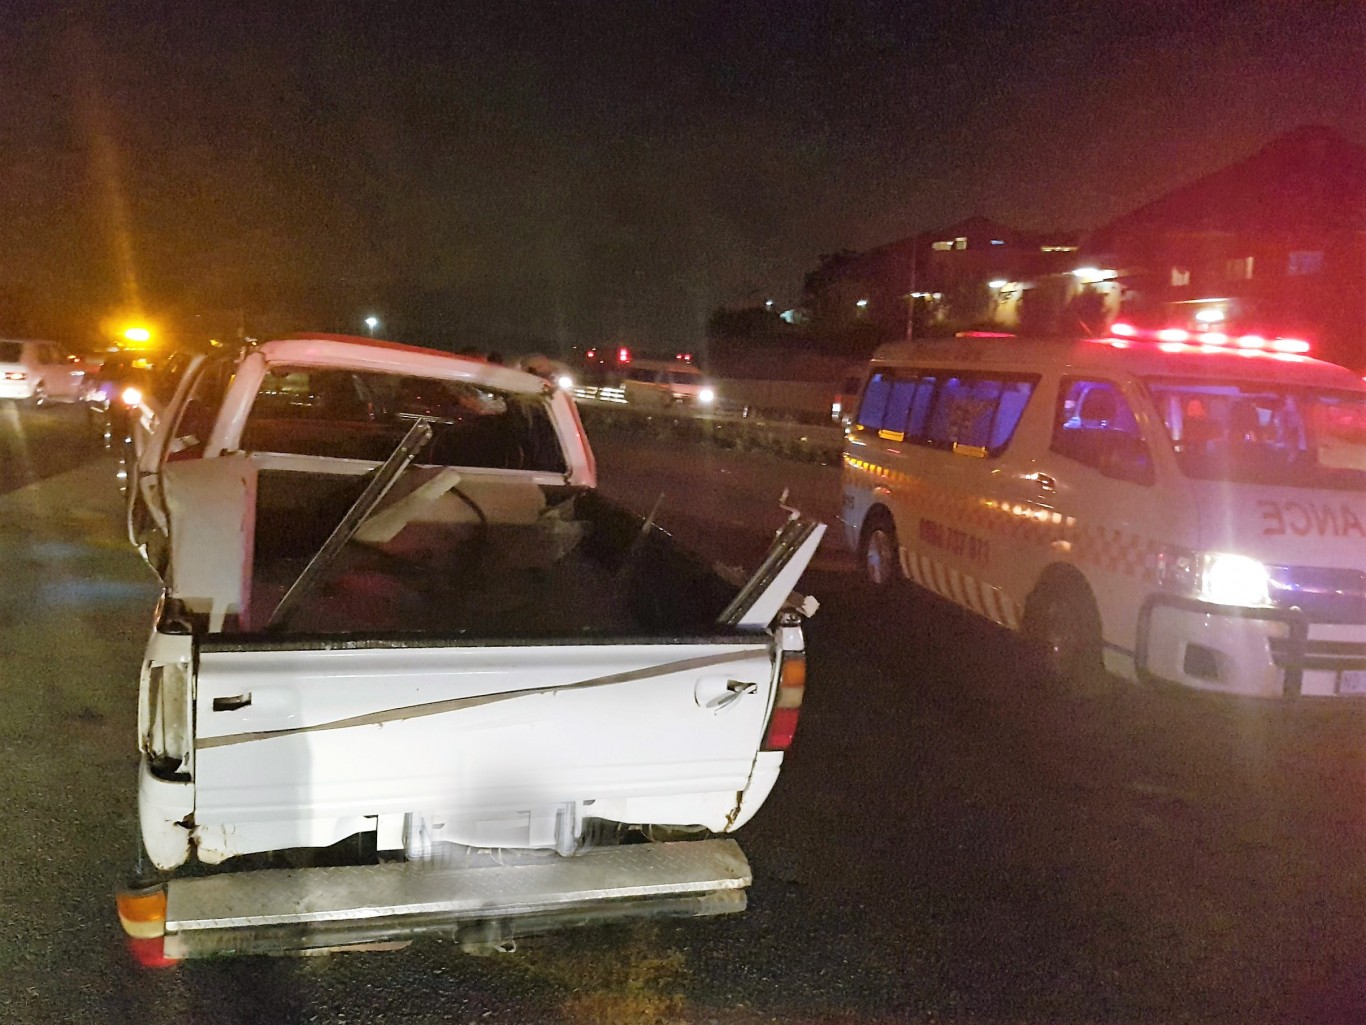 11 Injured in bakkie crash on the M25, Durban